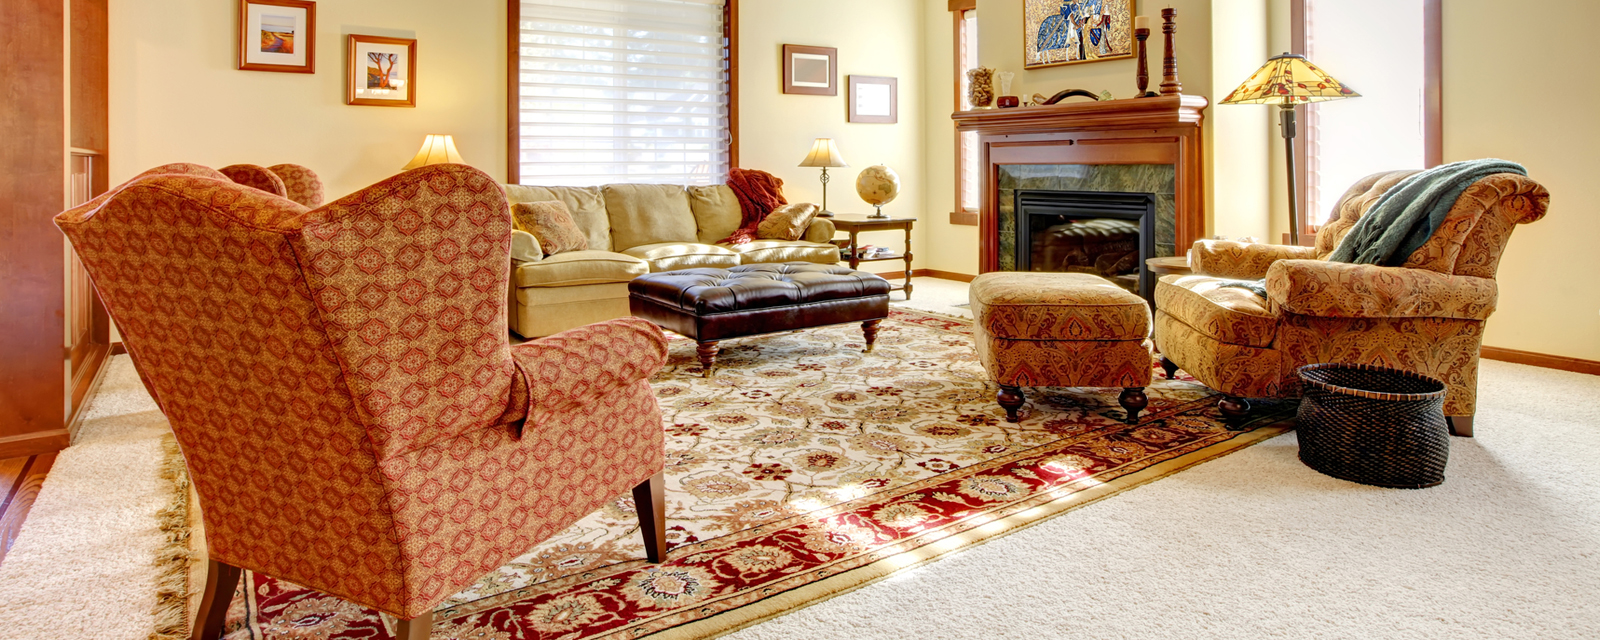 فرش ماشینی فانتزی یا سنتی ؟